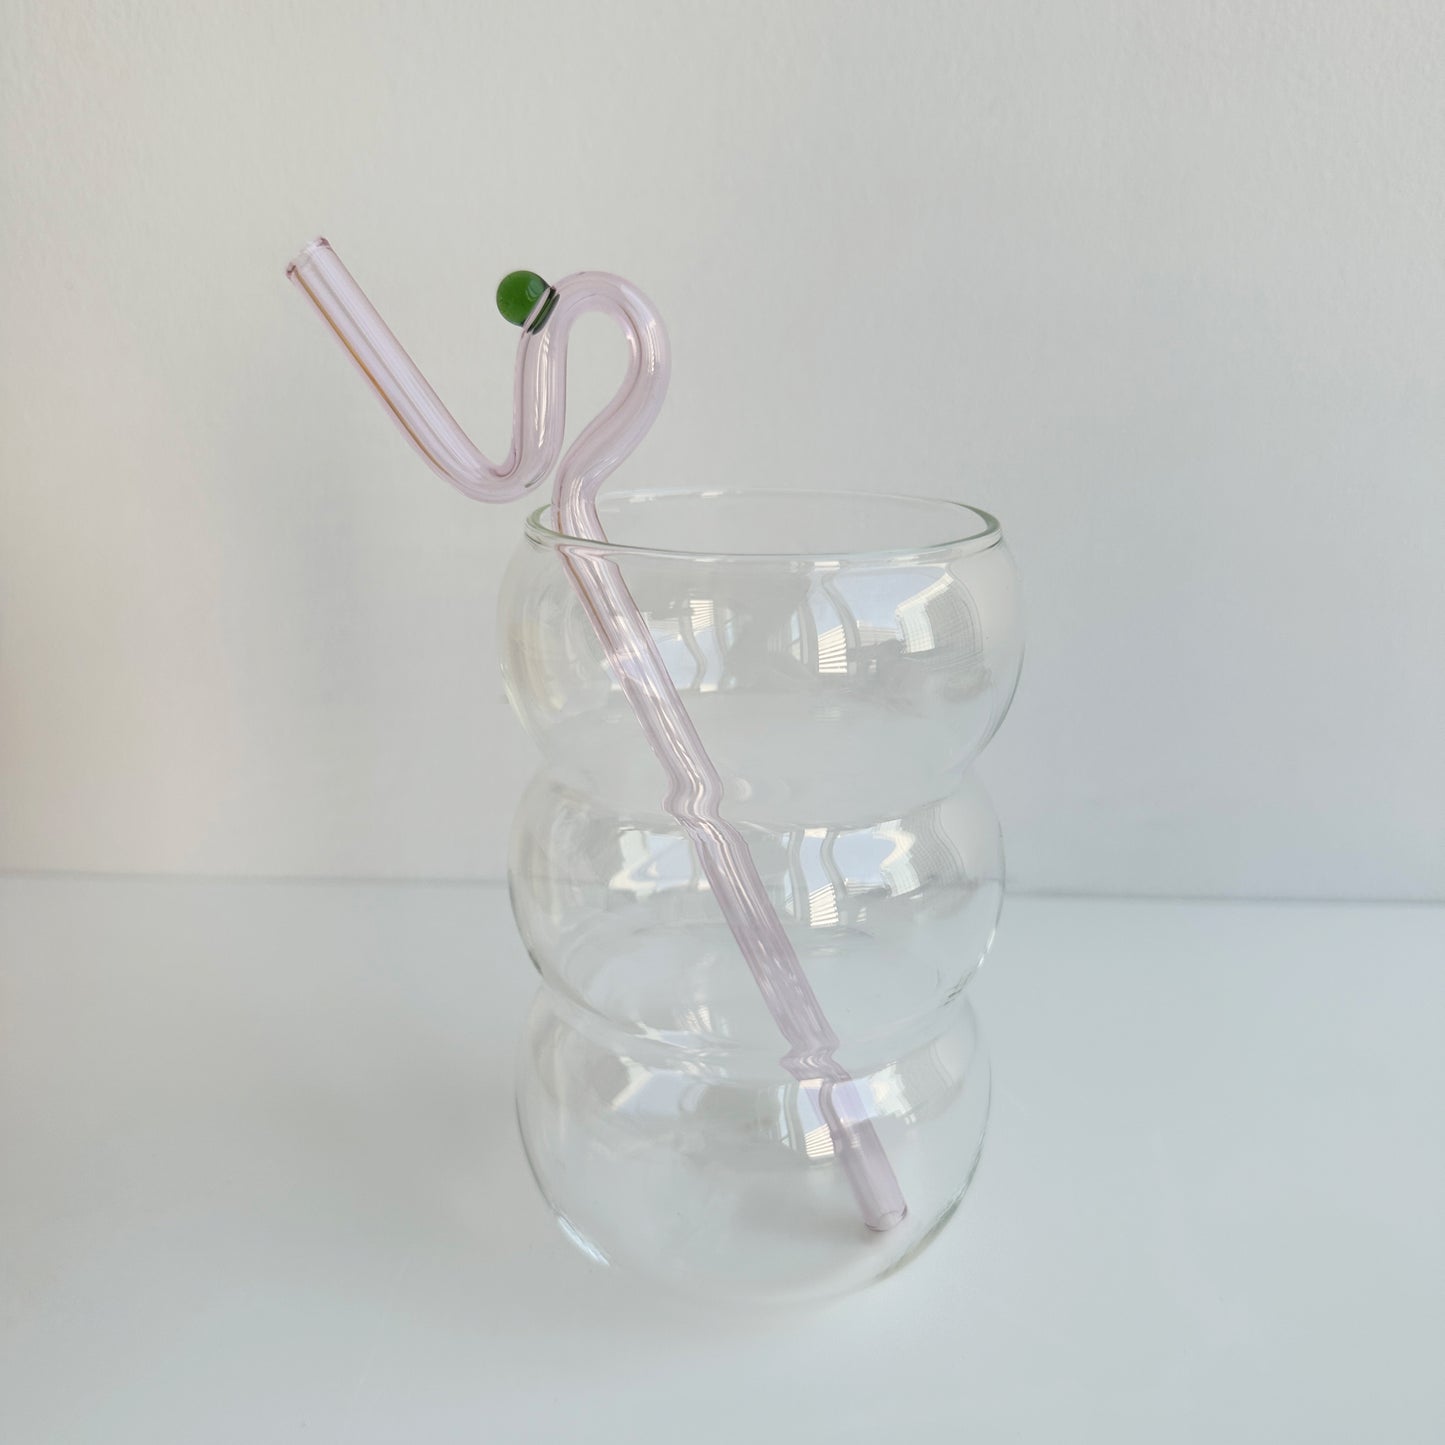 twisty glass straw